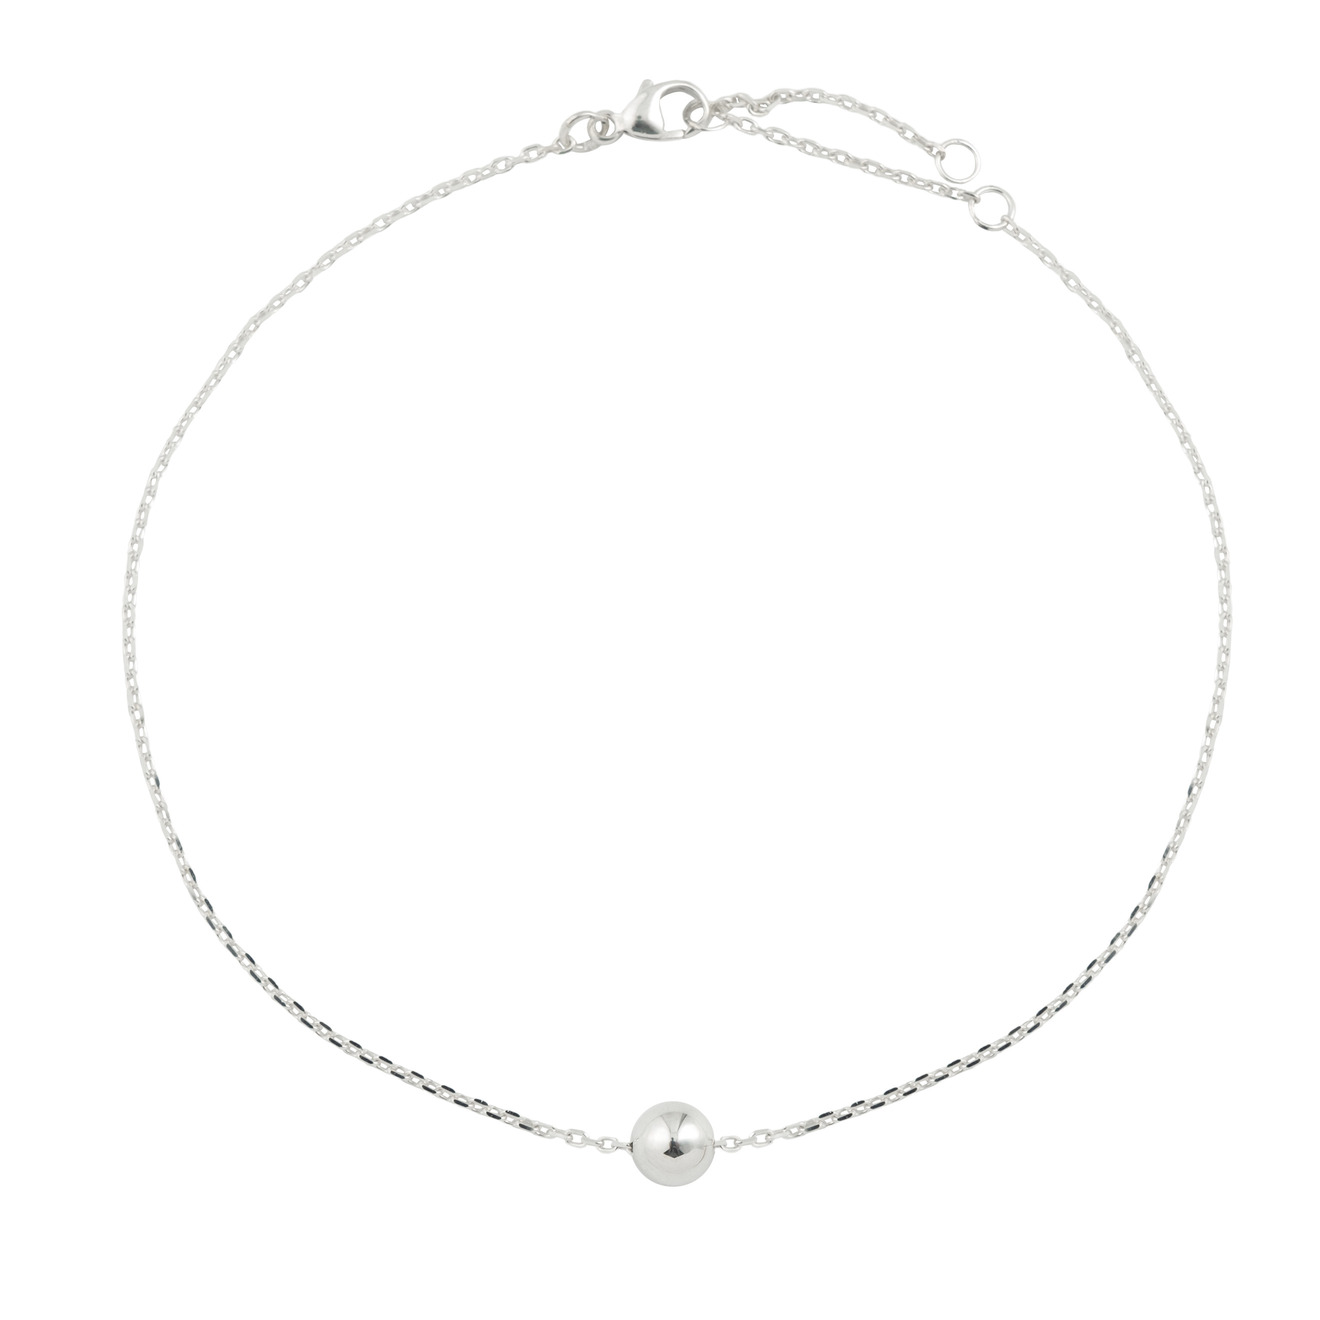 Prosto Jewelry Анклет из серебра на цепочке с шариком подвеска серебряная prosto jewelry с серебрянным шариком м 1 шт